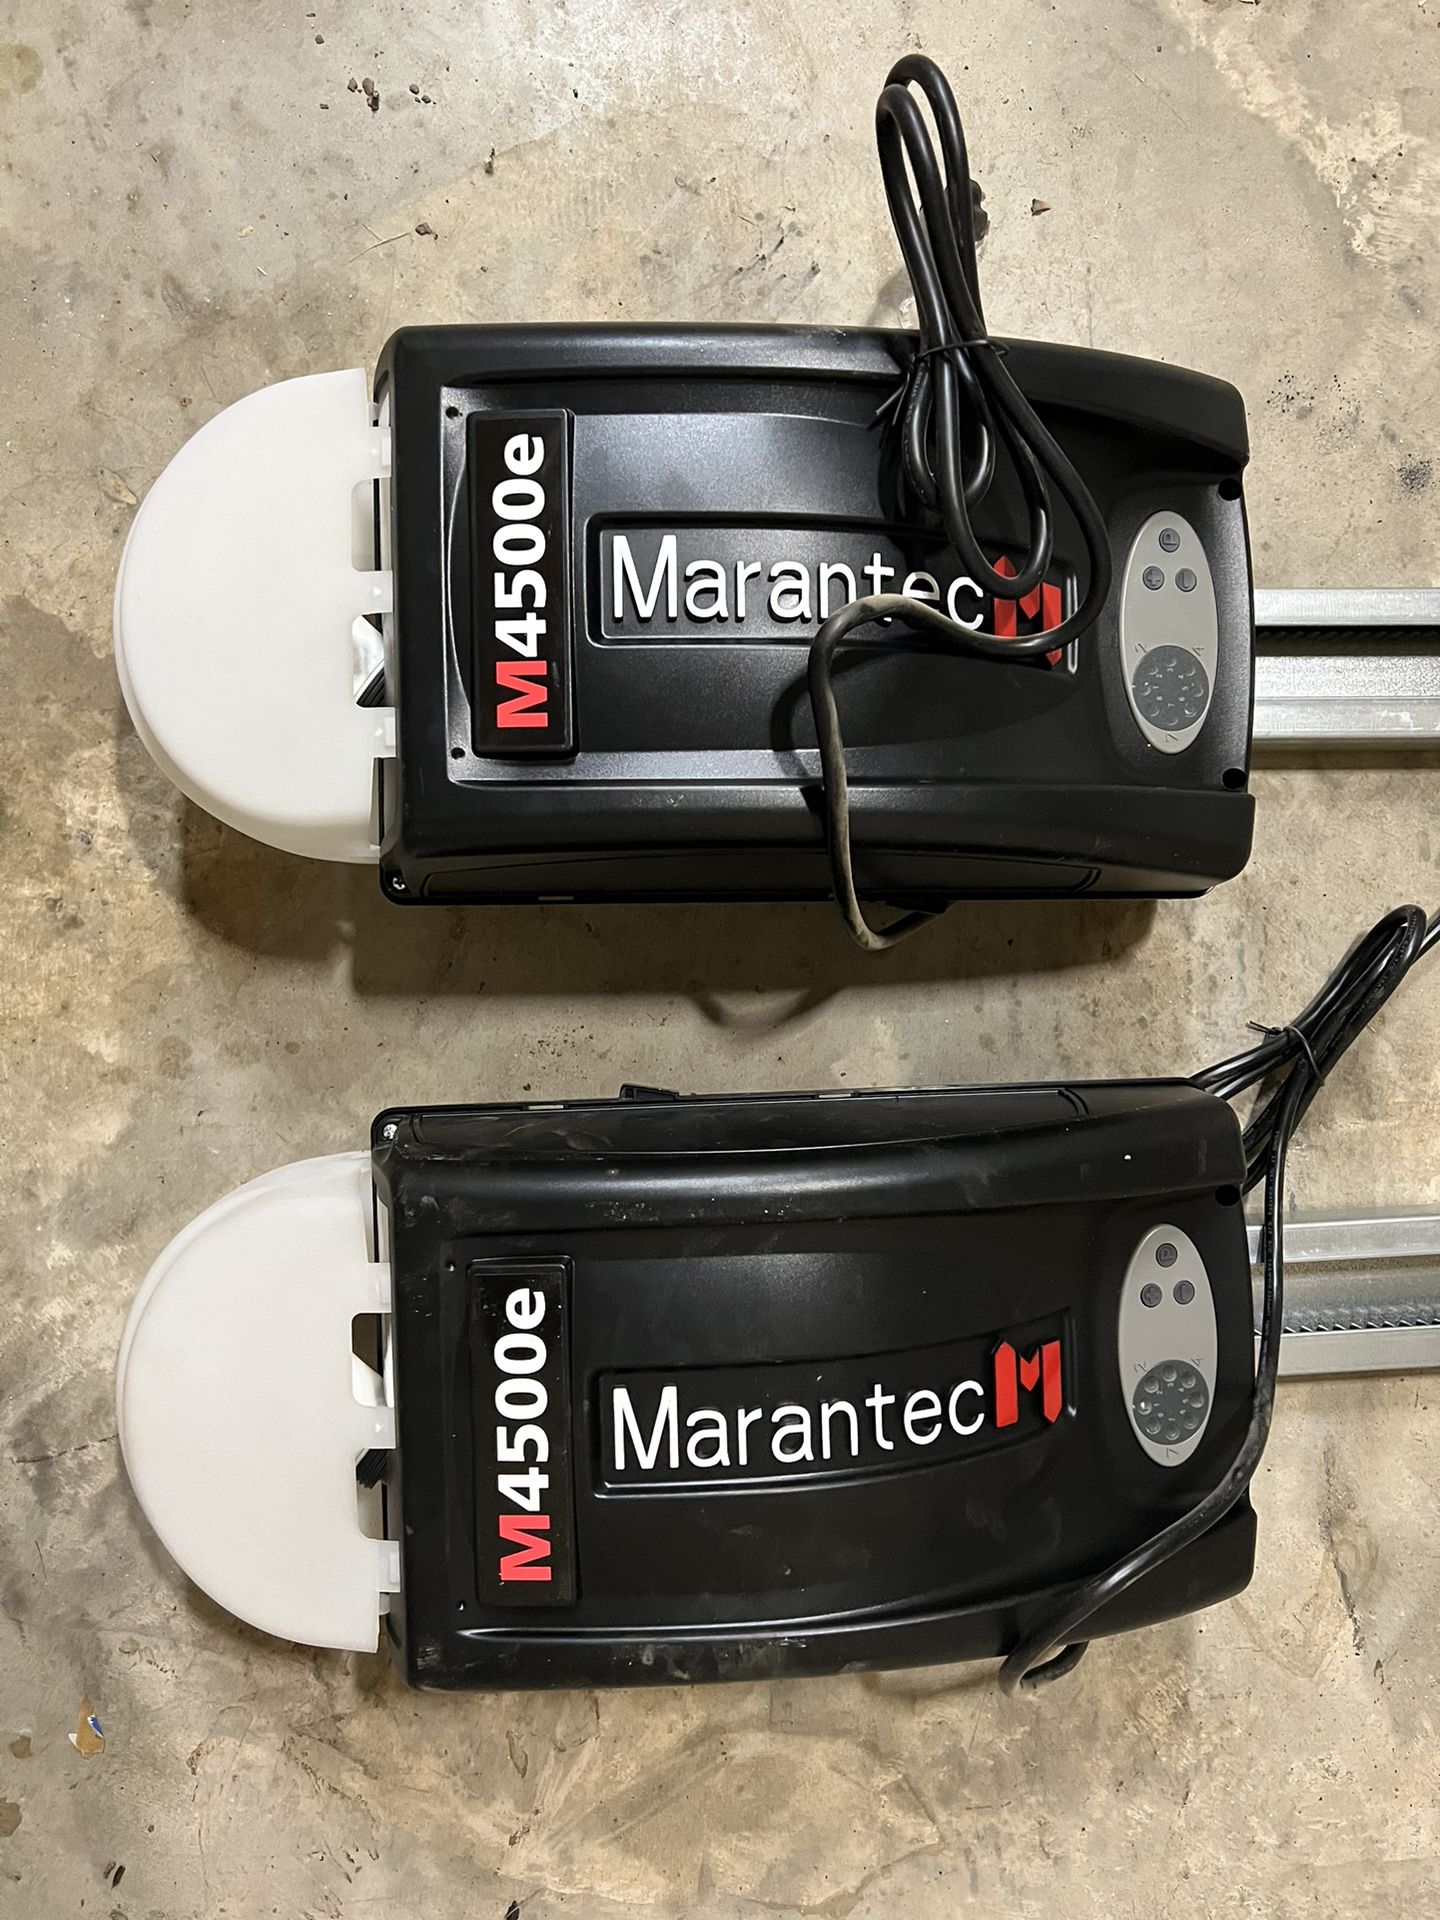 2 Garage Door Opener - Marantec M4500e